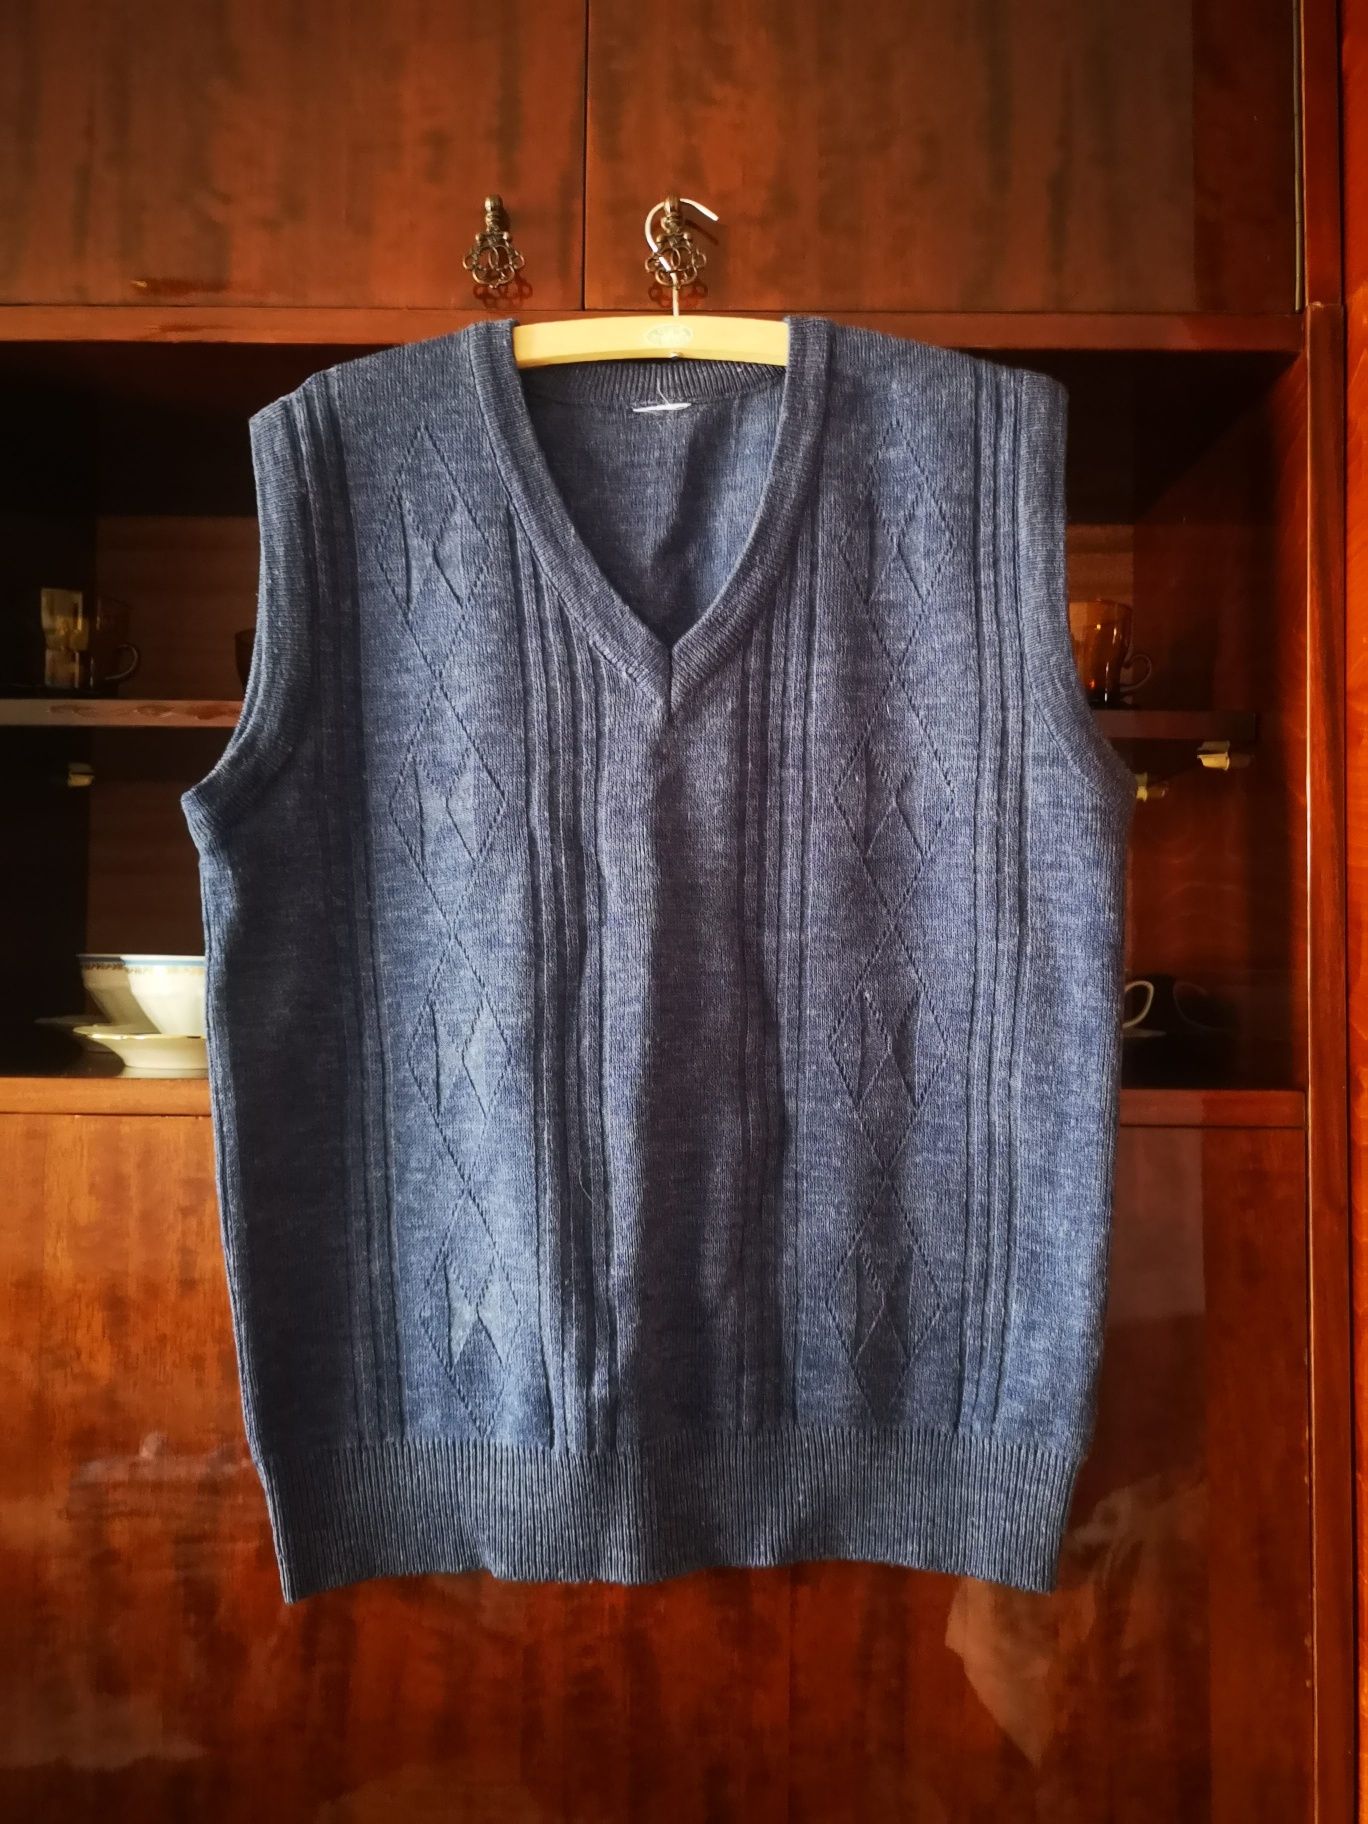 Sweterek bezrękawnik granatowy vintage - rozmiar m